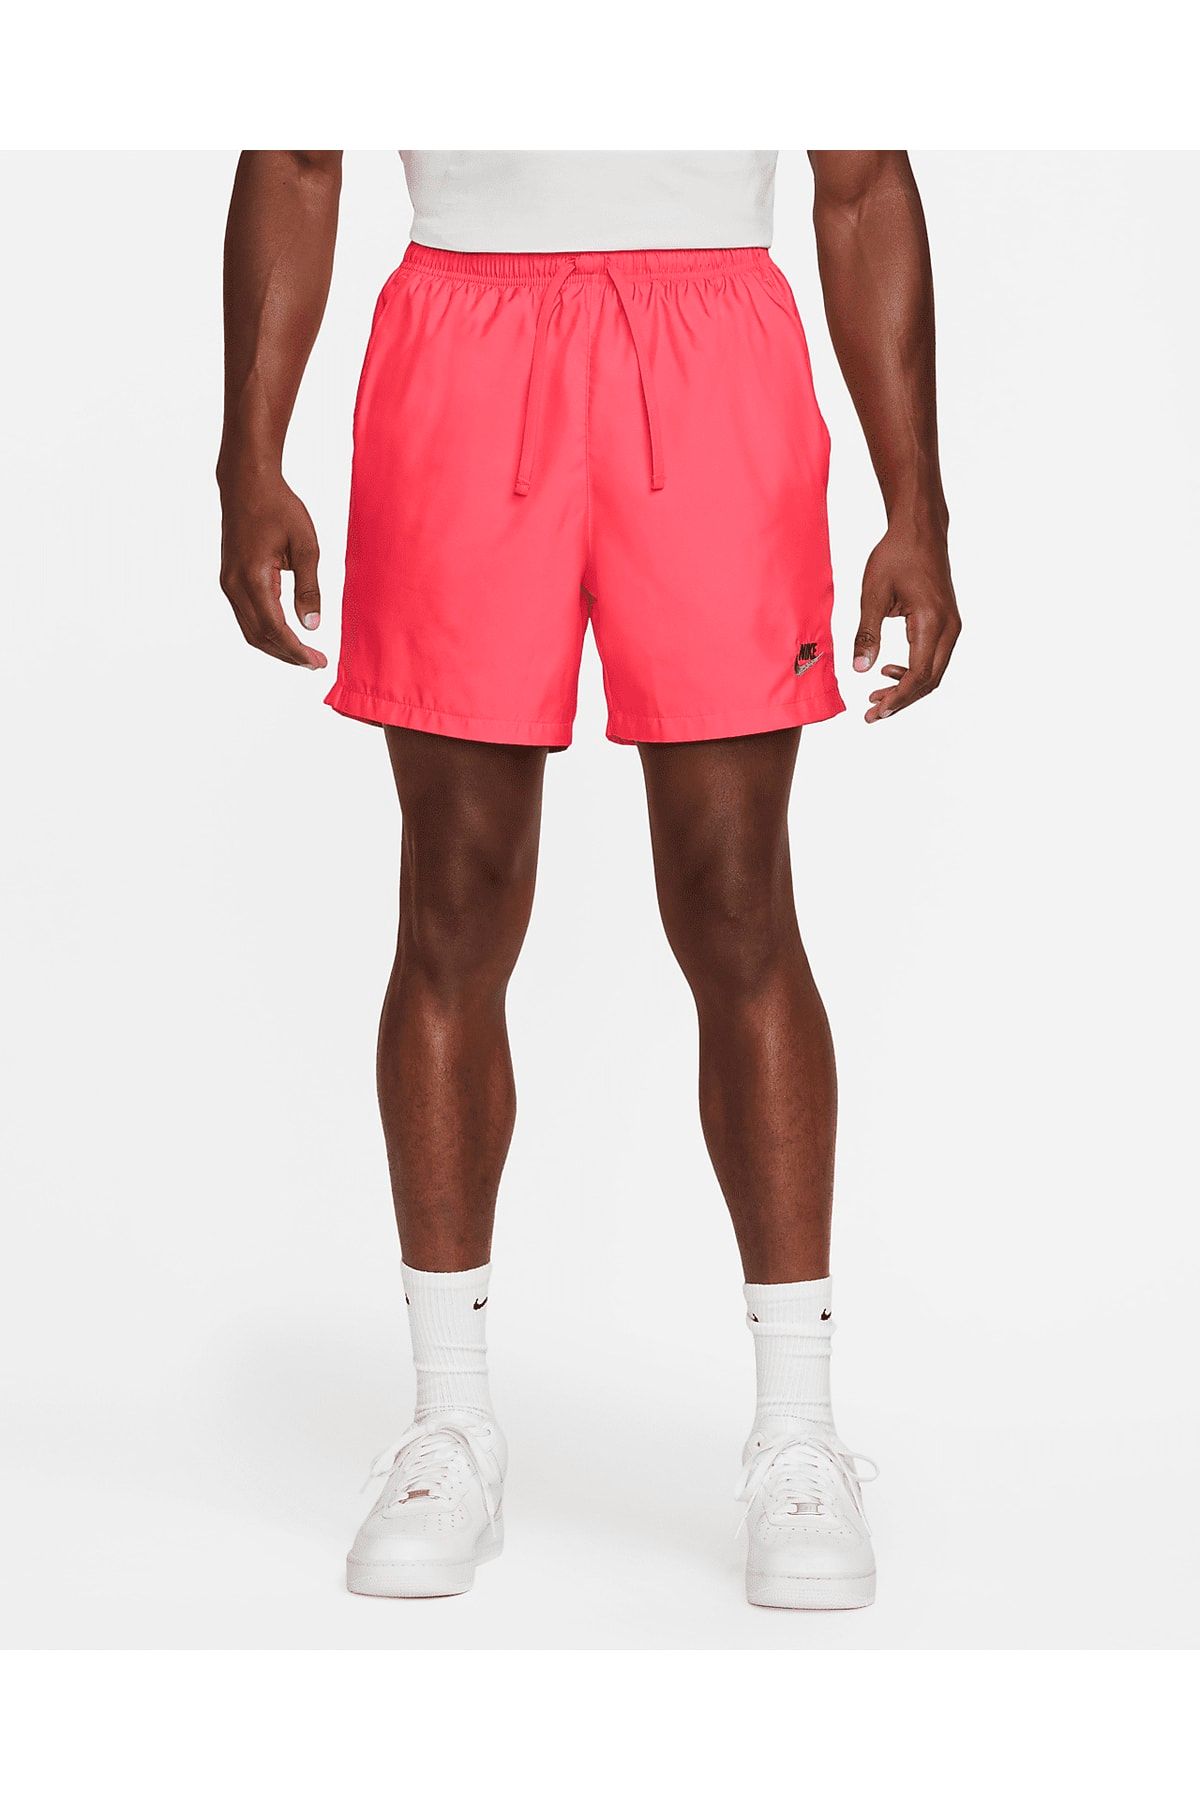 Nike Sportswear Men's Woven Flow Shorts Dz2534-660